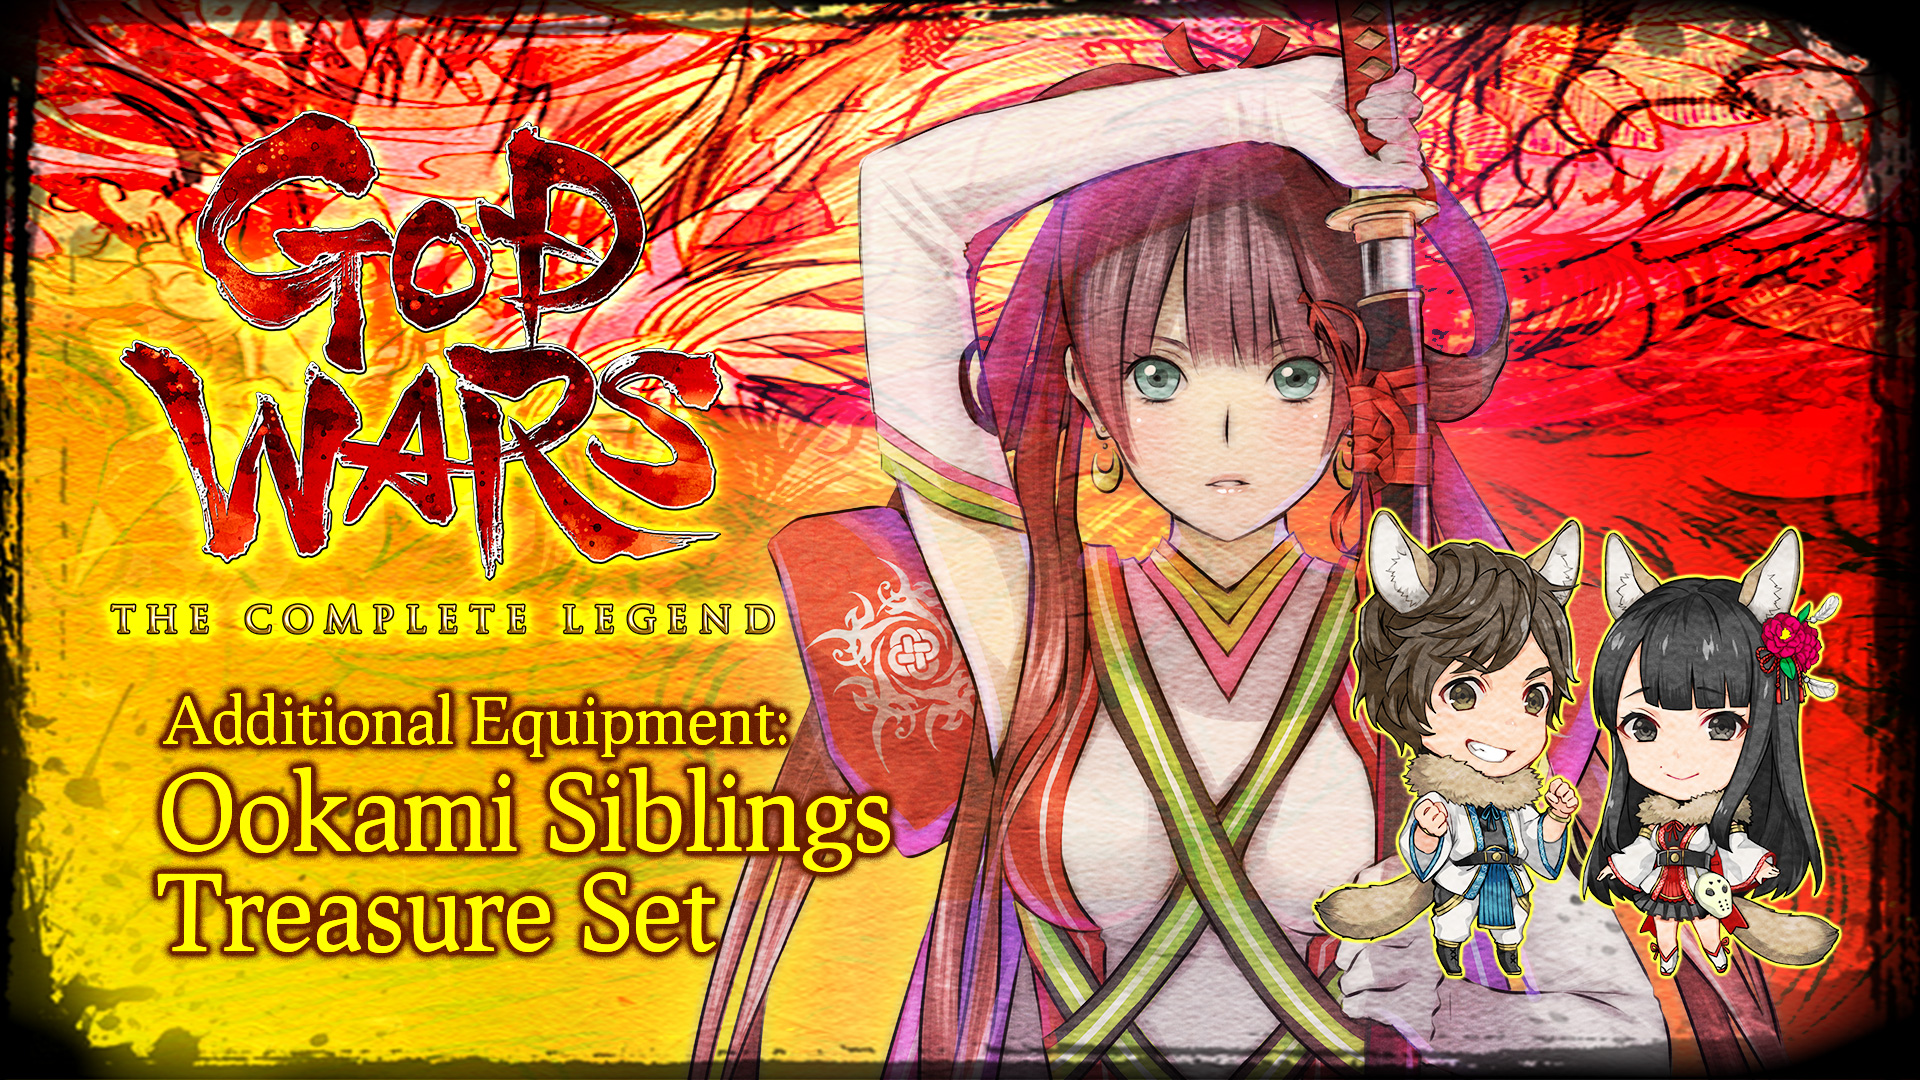 Additional Equipment: Ookami Siblings Treasure Set